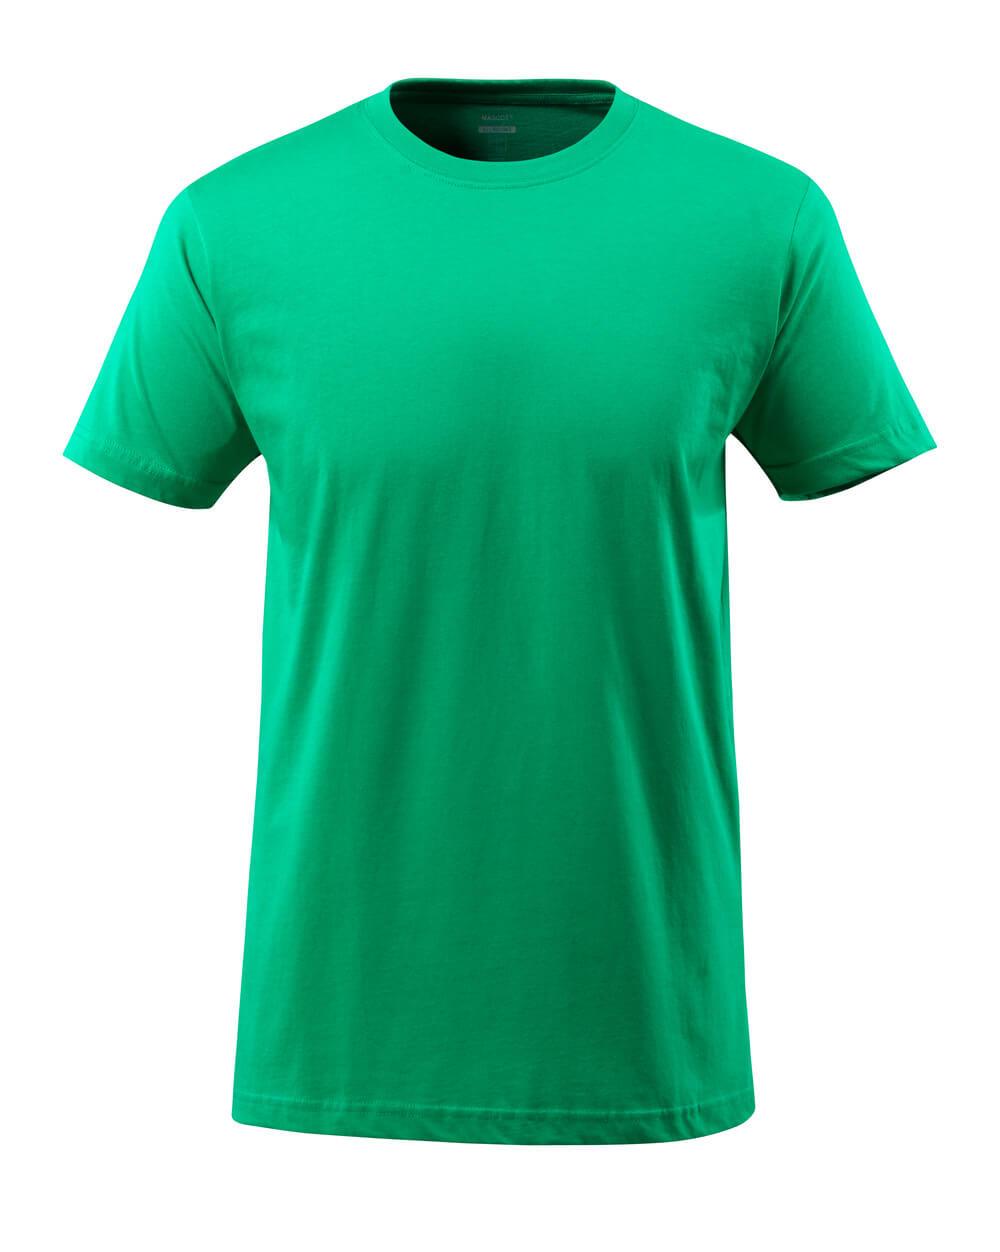 MASCOT® CROSSOVER 51579-965-333 T-shirt | Grass Green